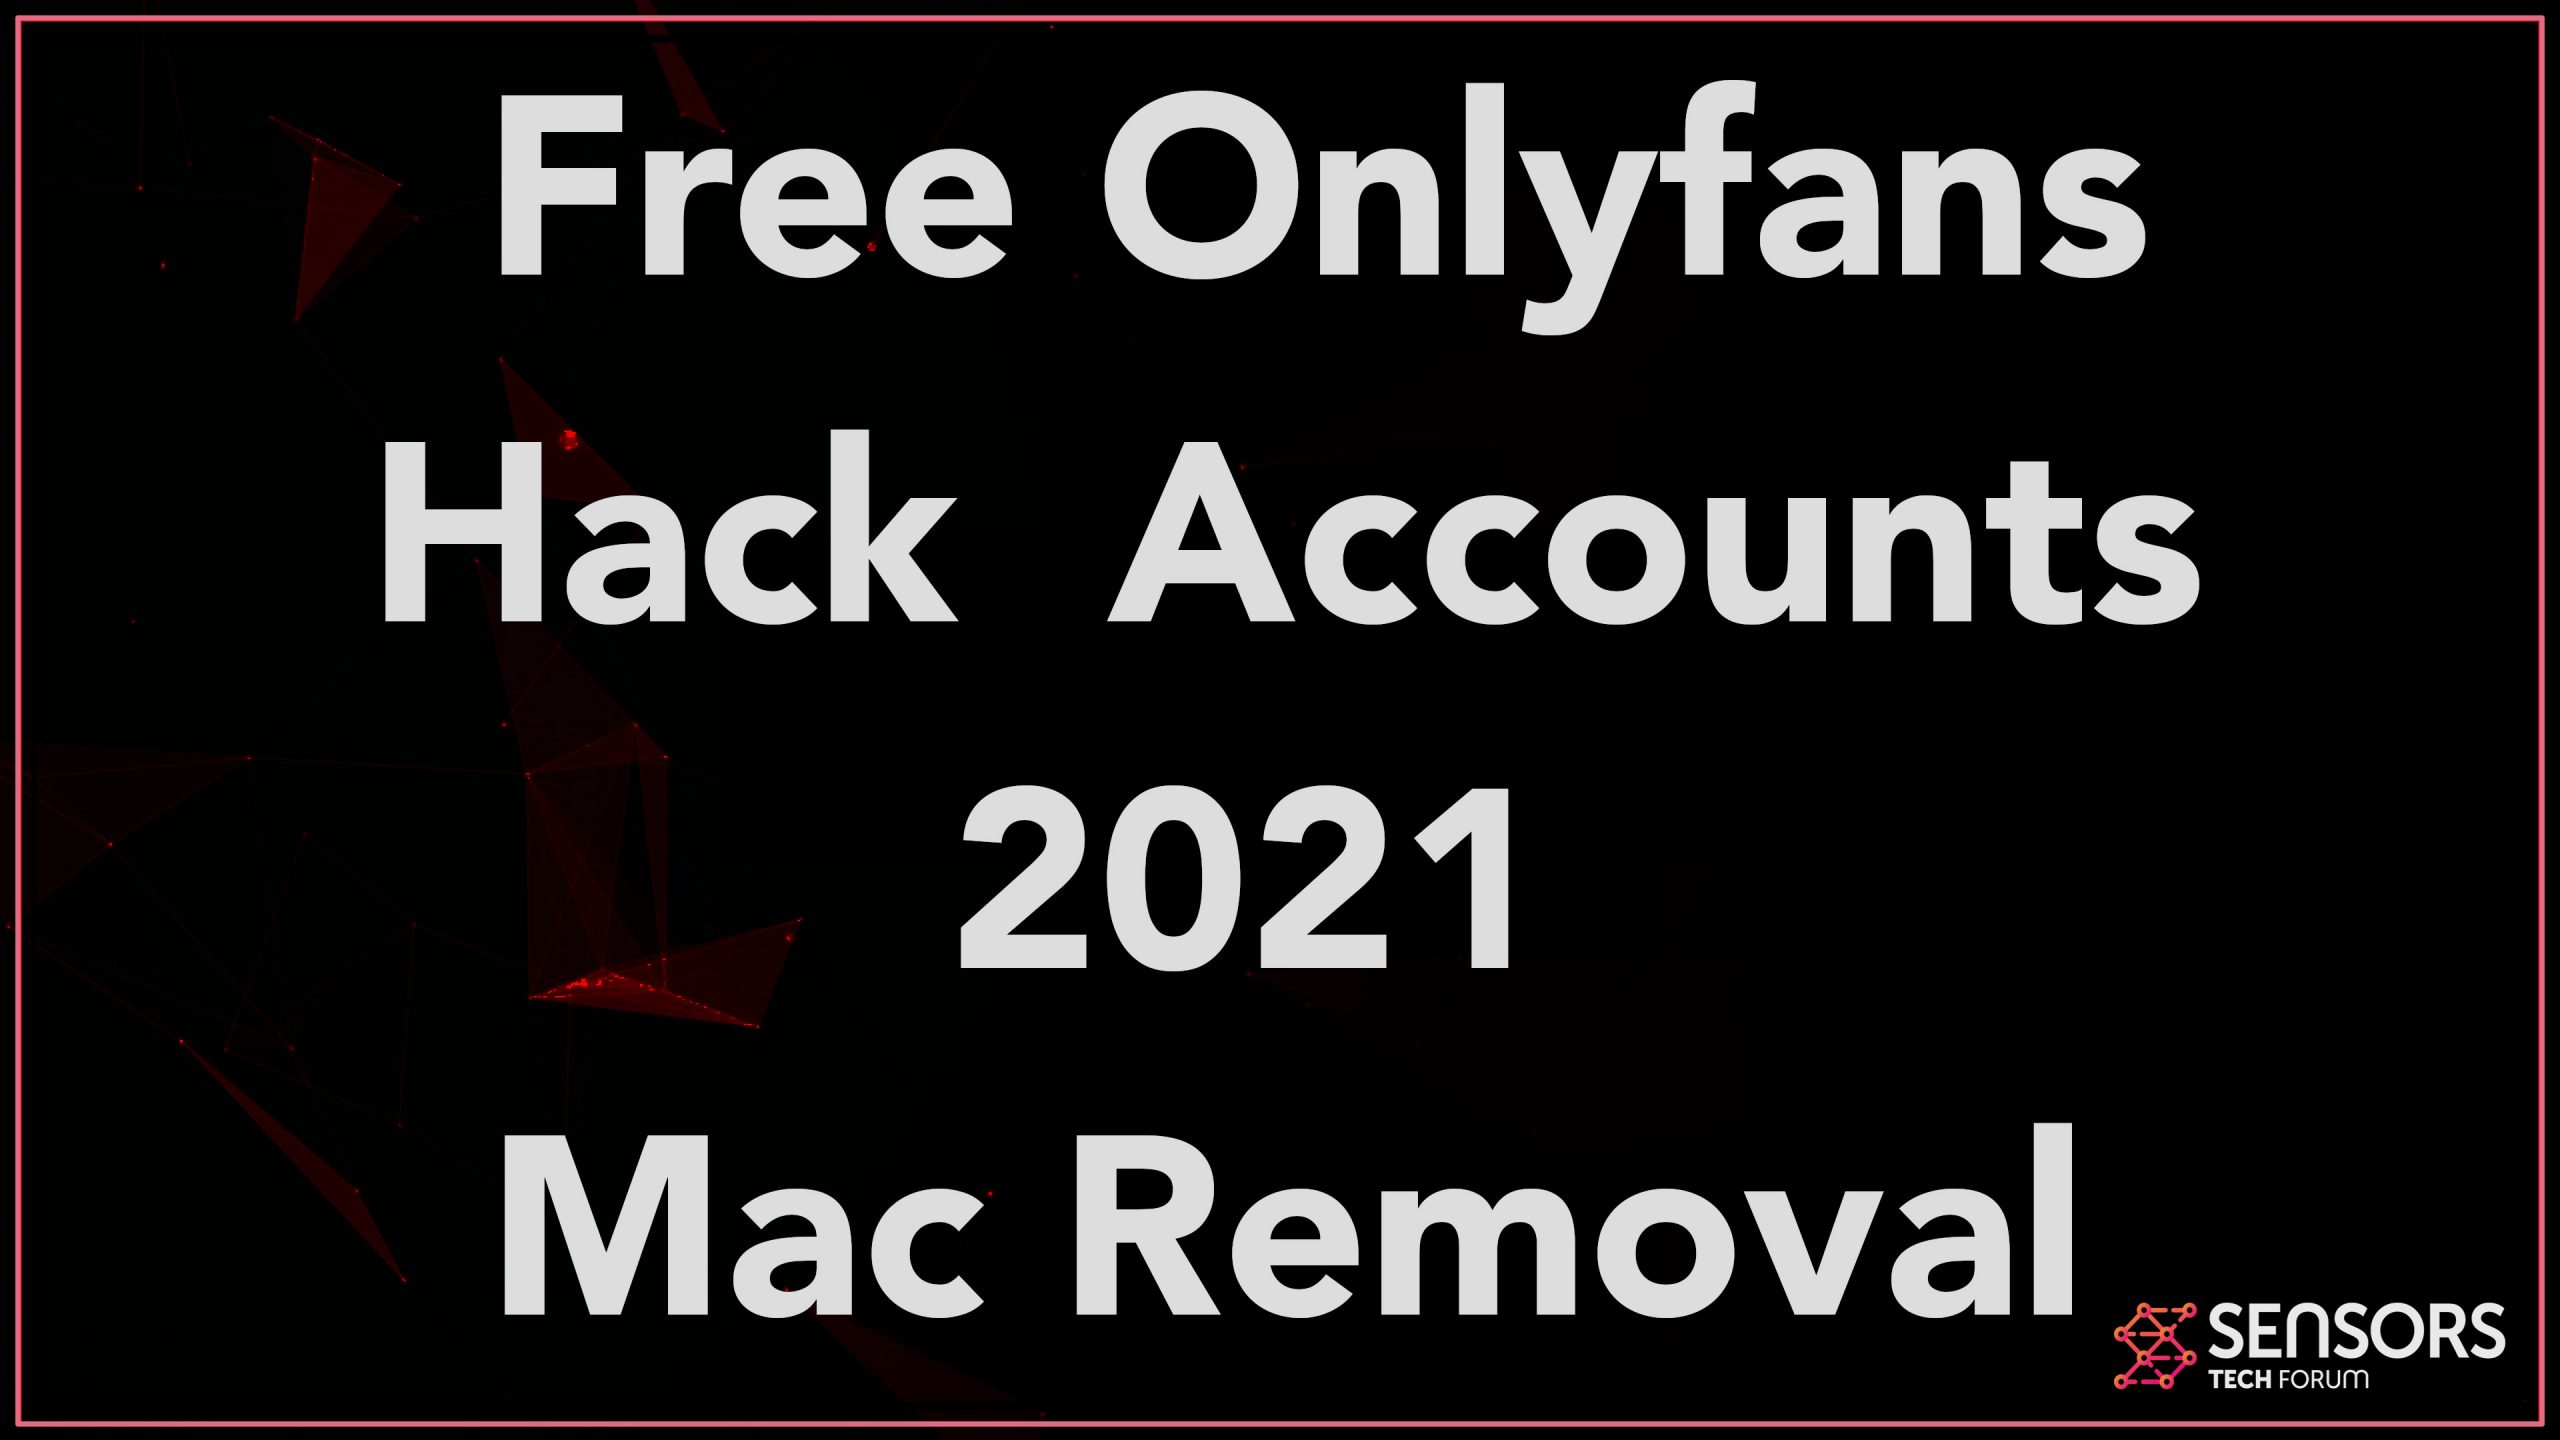 Free onlyfans logins 2021